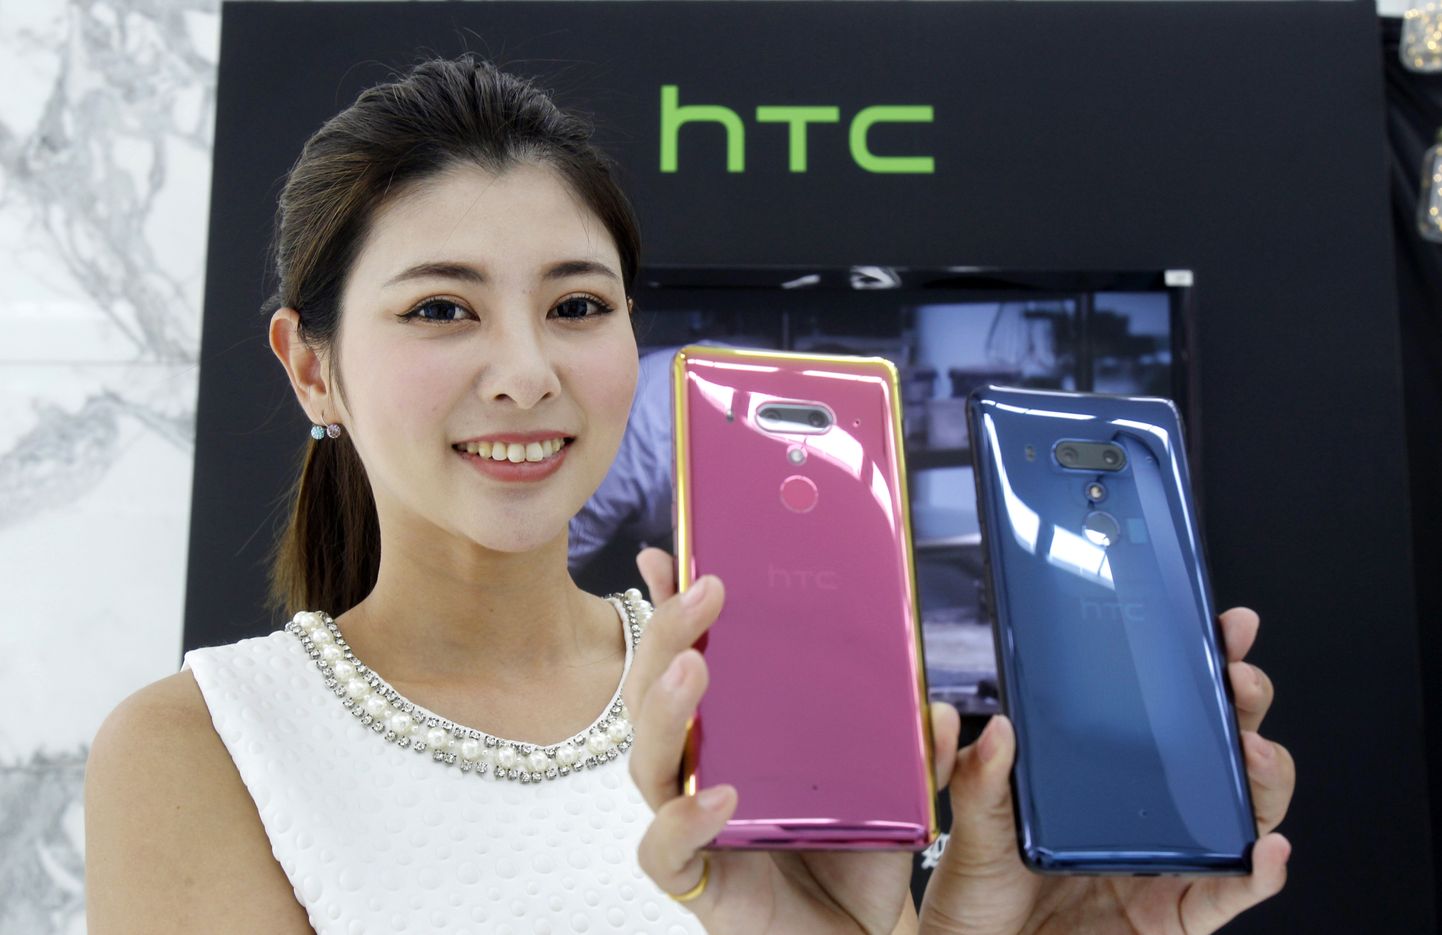 Modell demonstreerib HTC U12+ nutitelefone Taipeis.